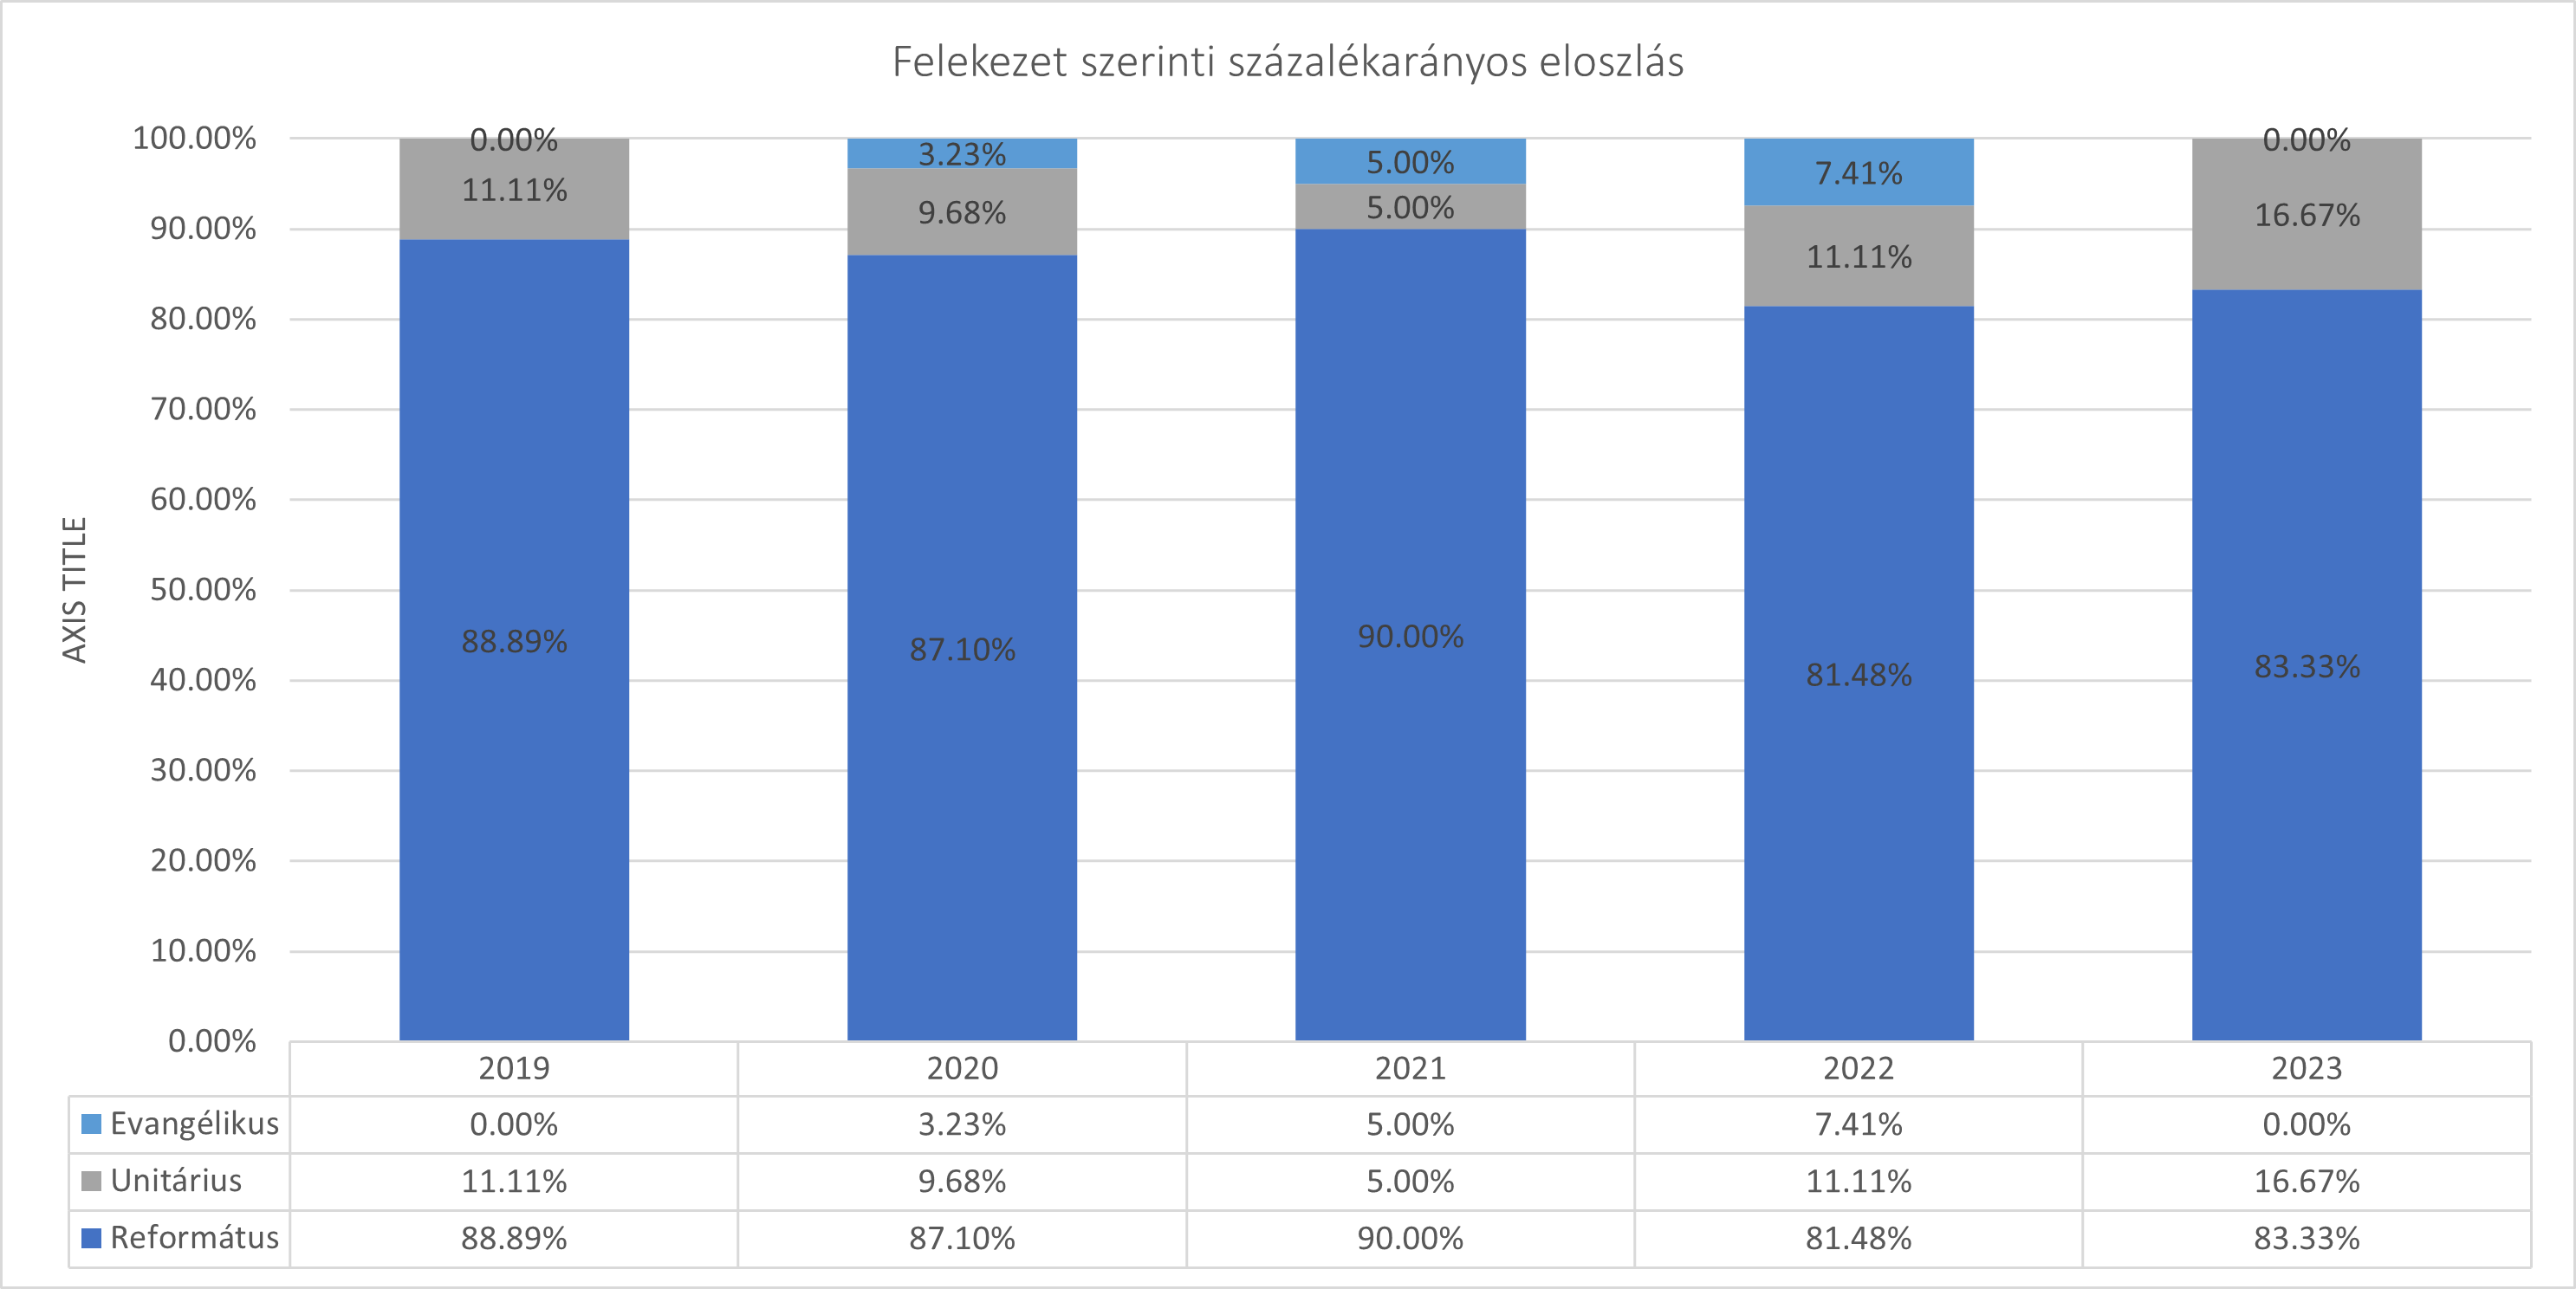 2019-2023 felvételizők vallás (felekezet) szerinti megoszlása